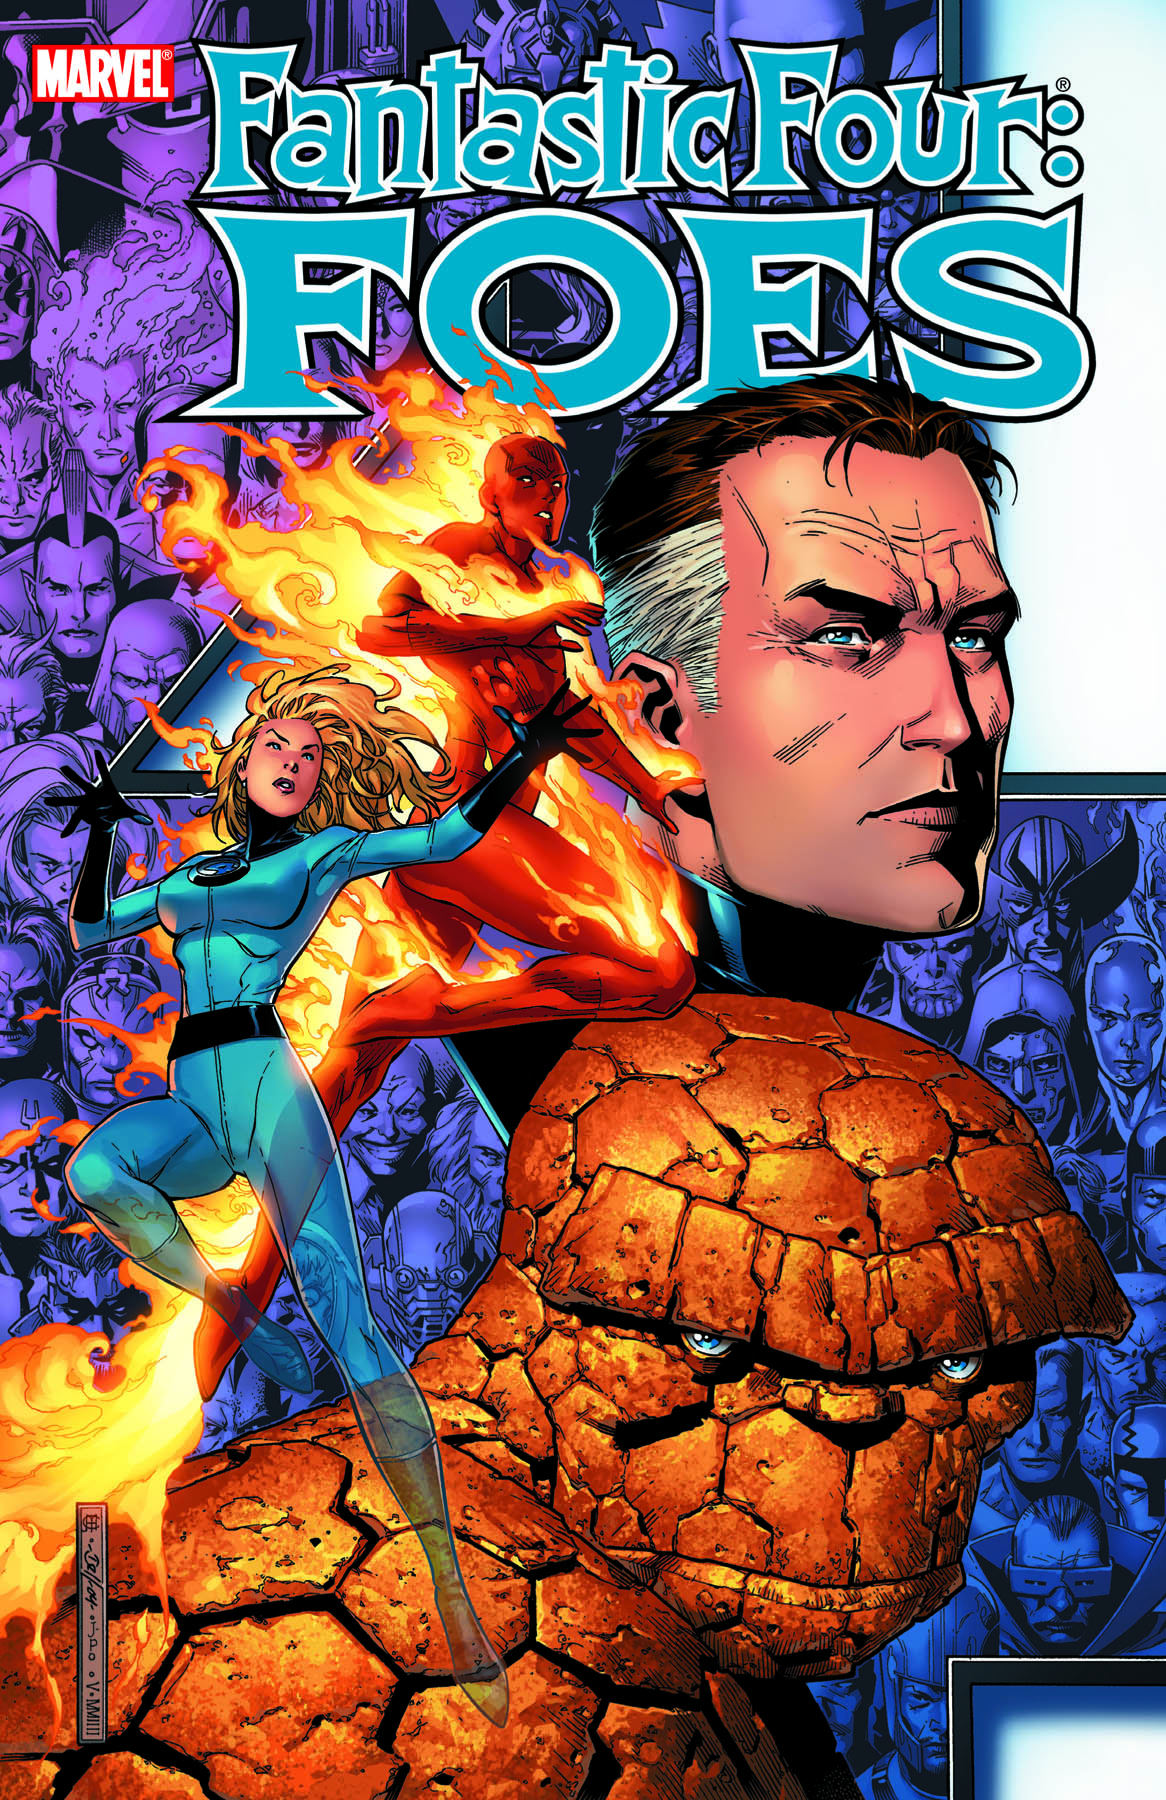 Fantastic Four: Foes (2005) #1